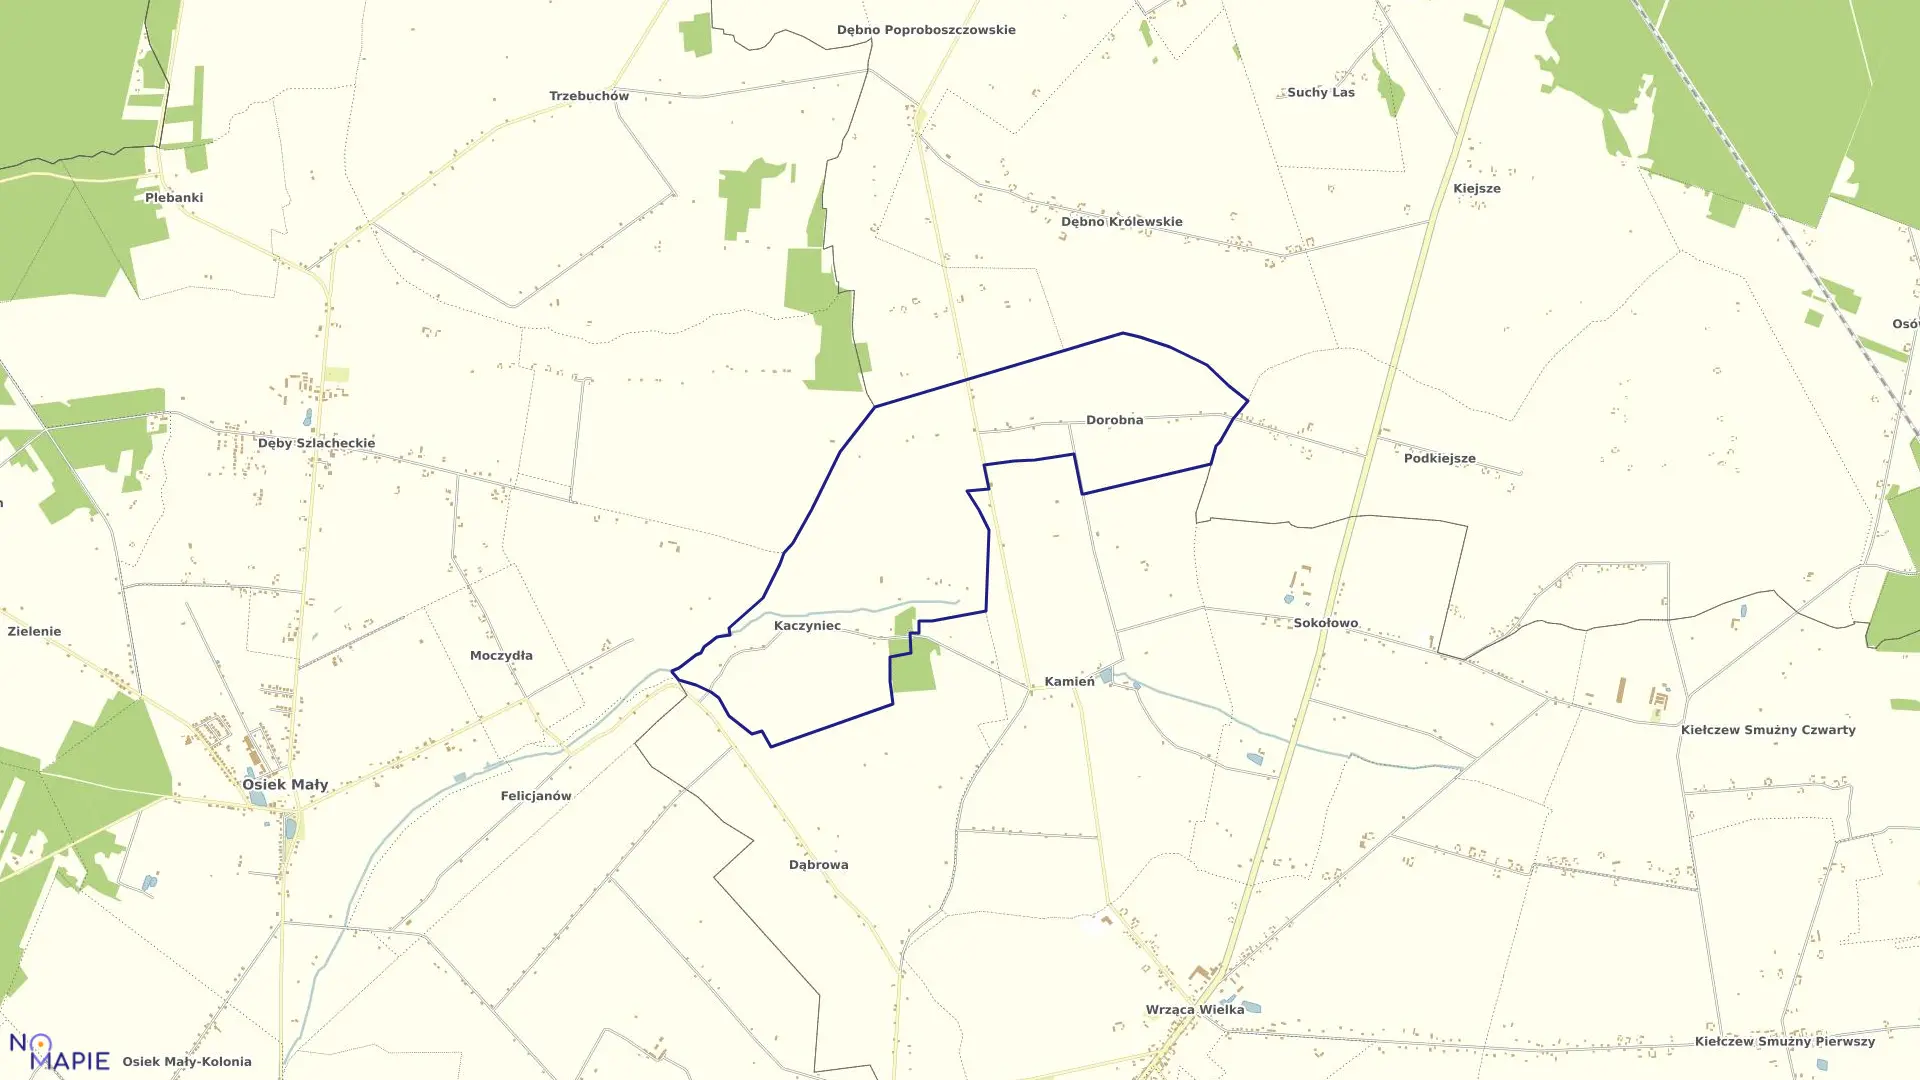 Mapa obrębu KACZYNIEC w gminie Koło